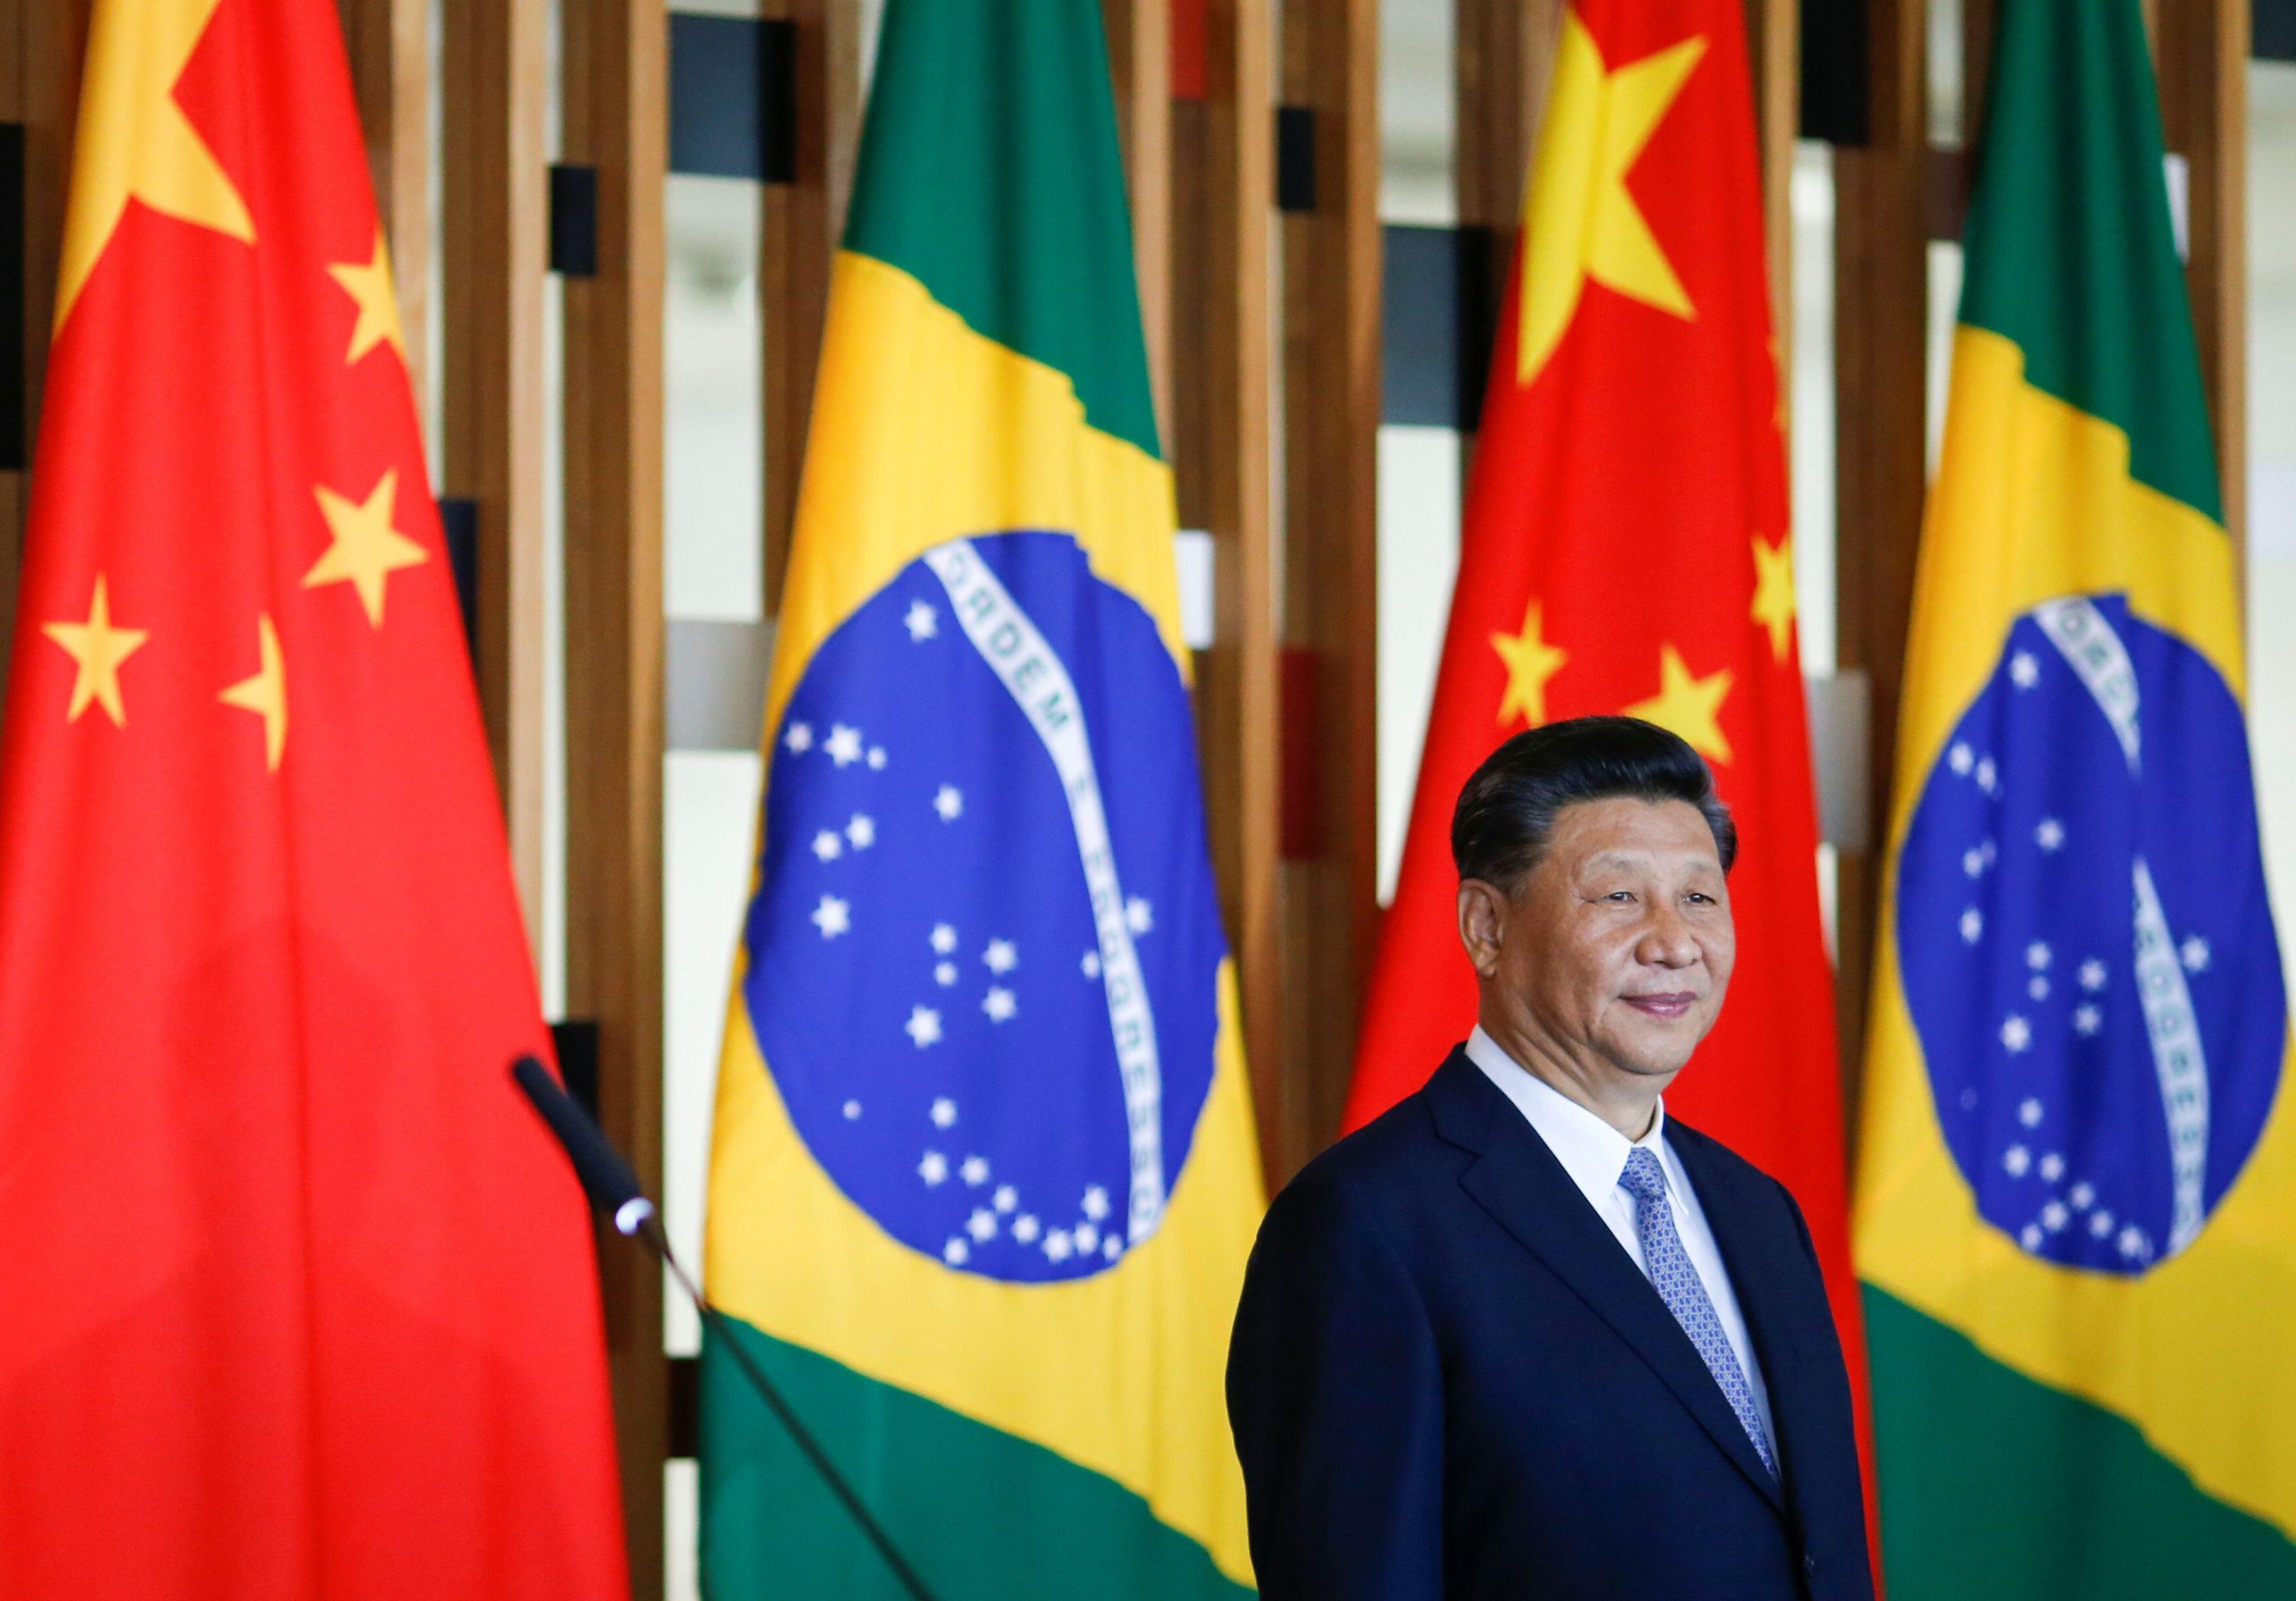 Xi Jinping em um evento com bandeiras do Brasil e da China atrás dele